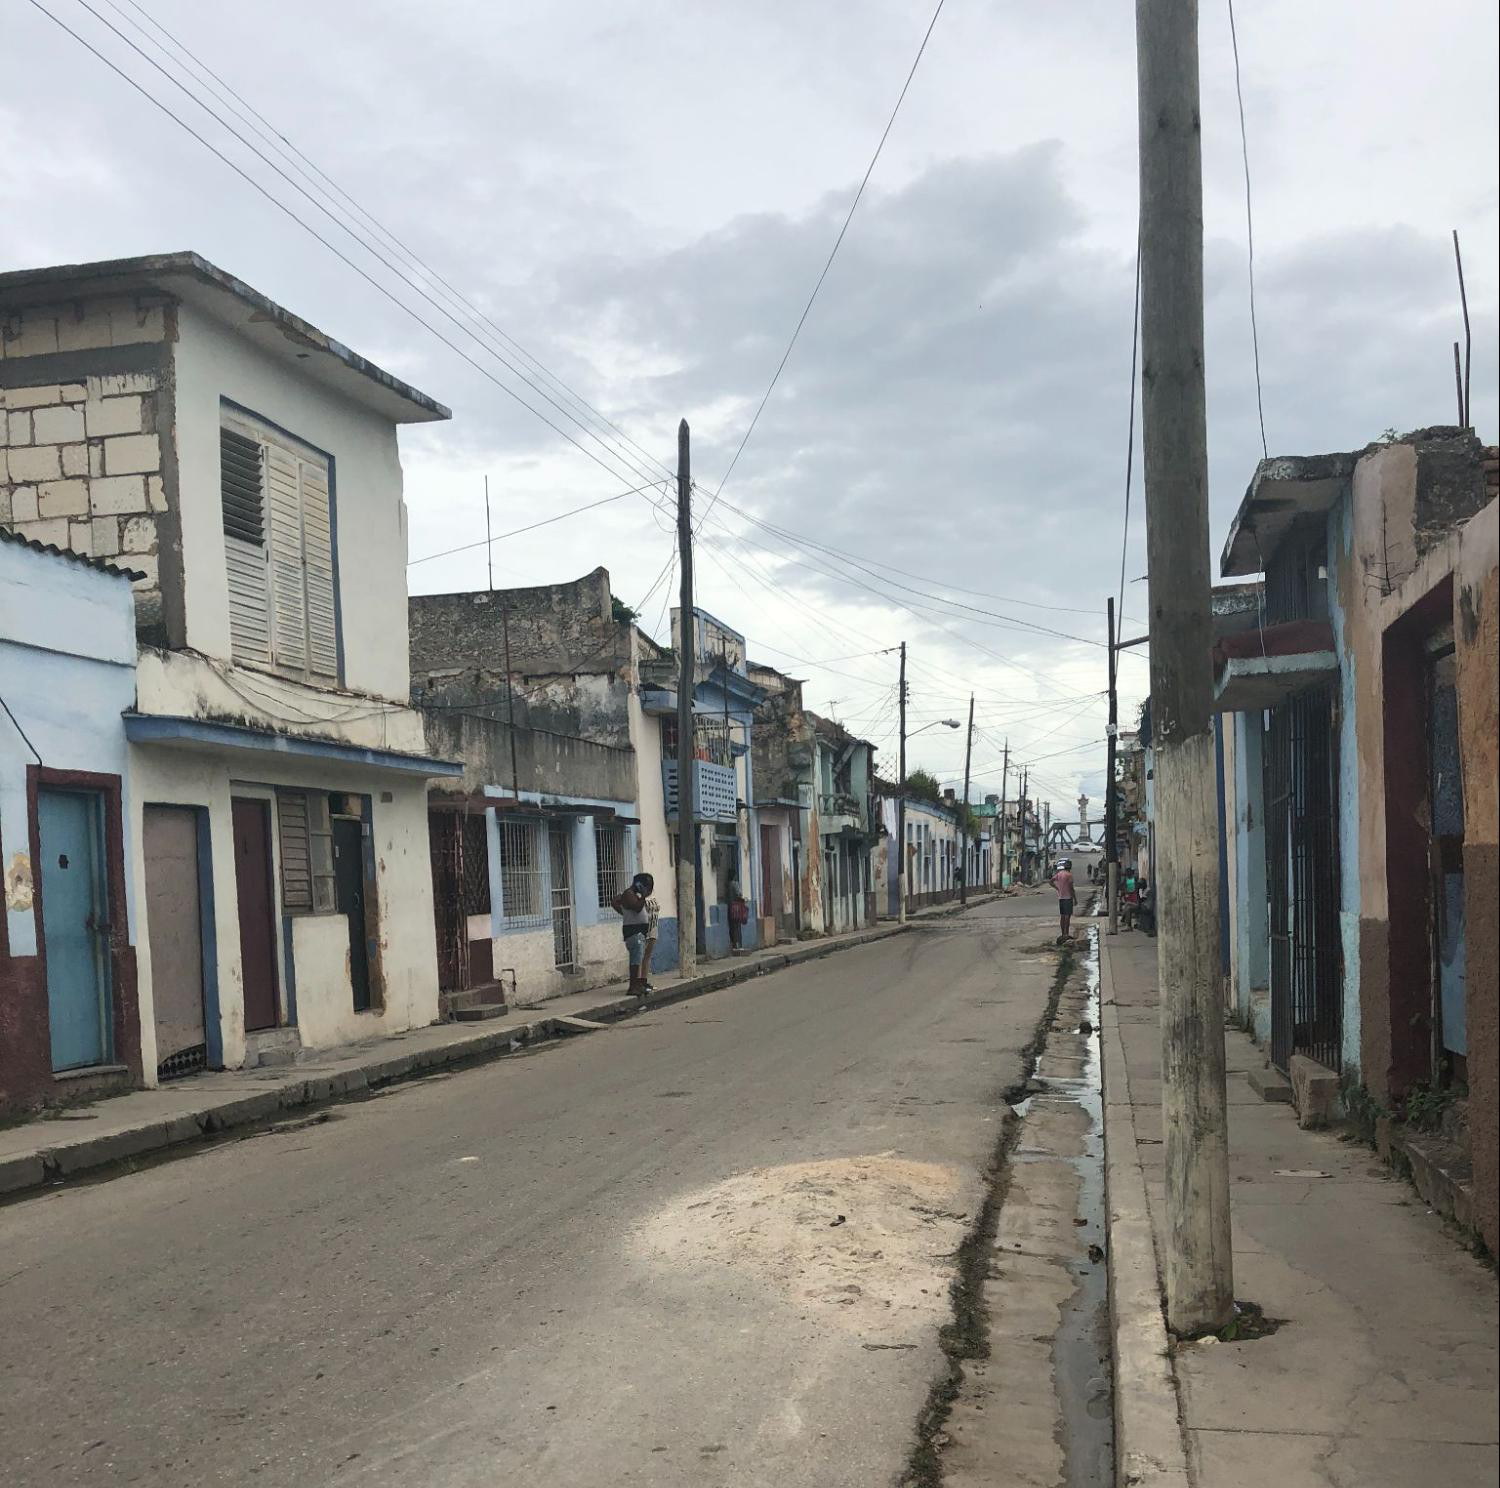 A street in La Marina, Matanzas, Cuba. Photo by Cindy García, 2018.